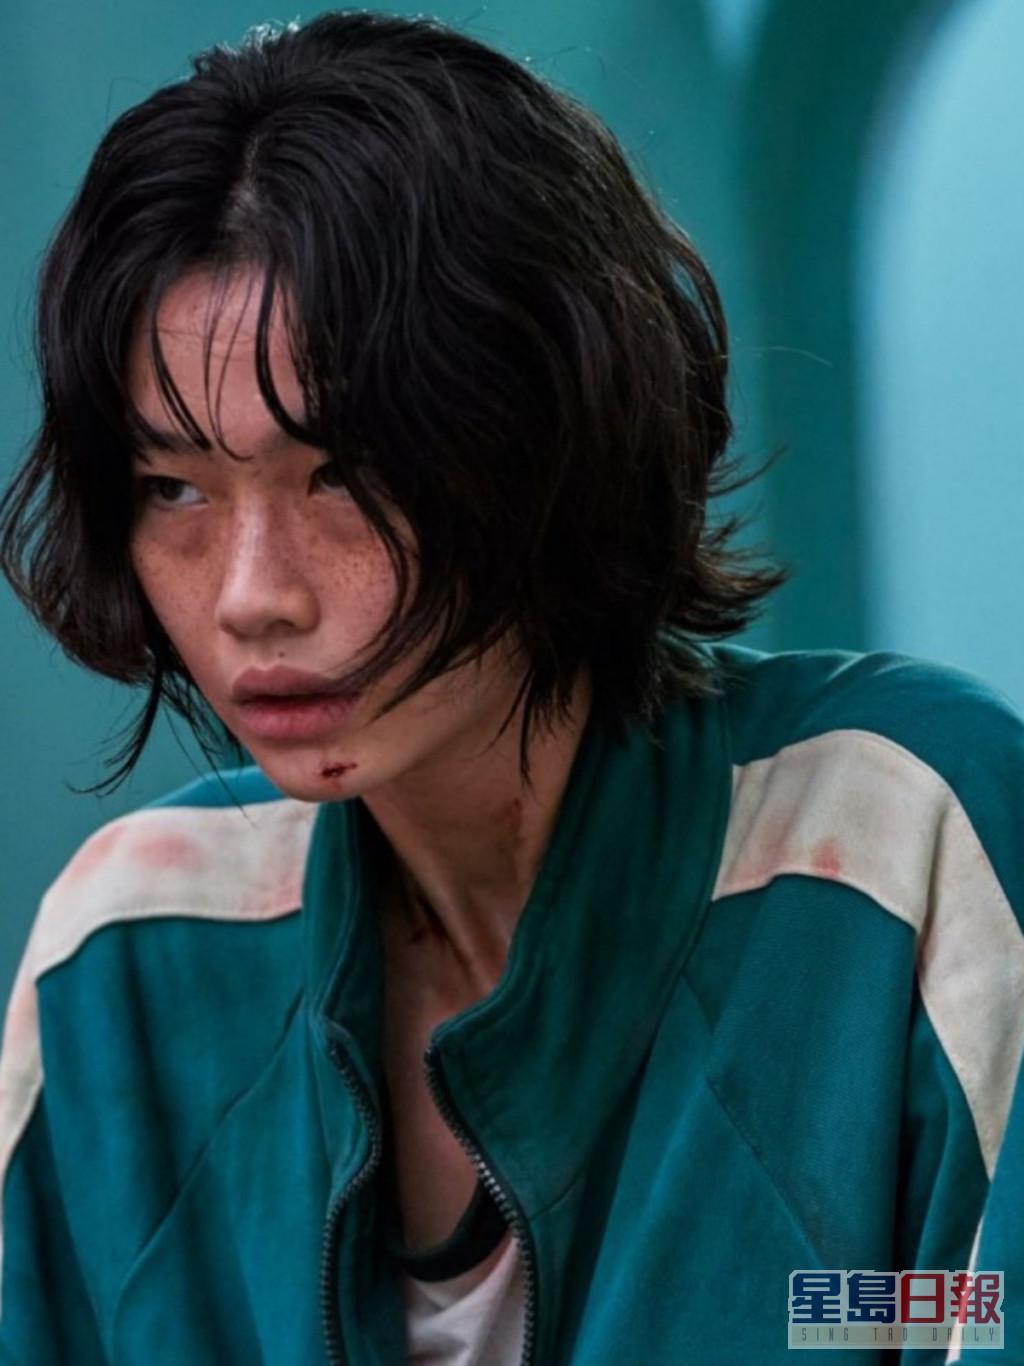 郑浩妍饰演的角色第一季已经死咗，或会以双胞胎的身分演出新一季。